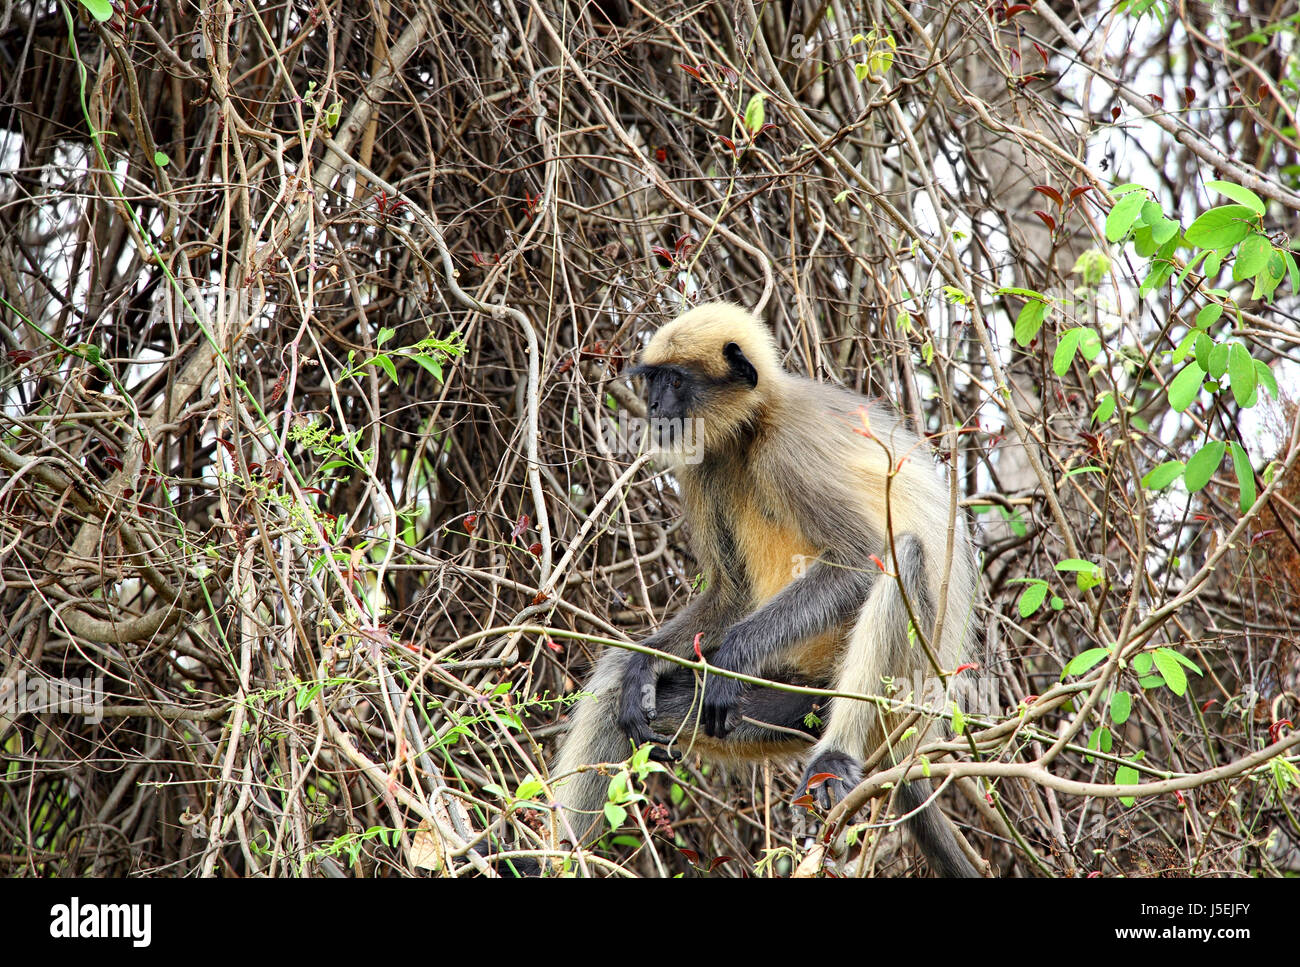 Gemeinsamen grauen Languren Affen Essen von einem wilden Beere Baum im Wald in Goa, Indien. Gehört zur Semnopithecus Entellus Arten Stockfoto